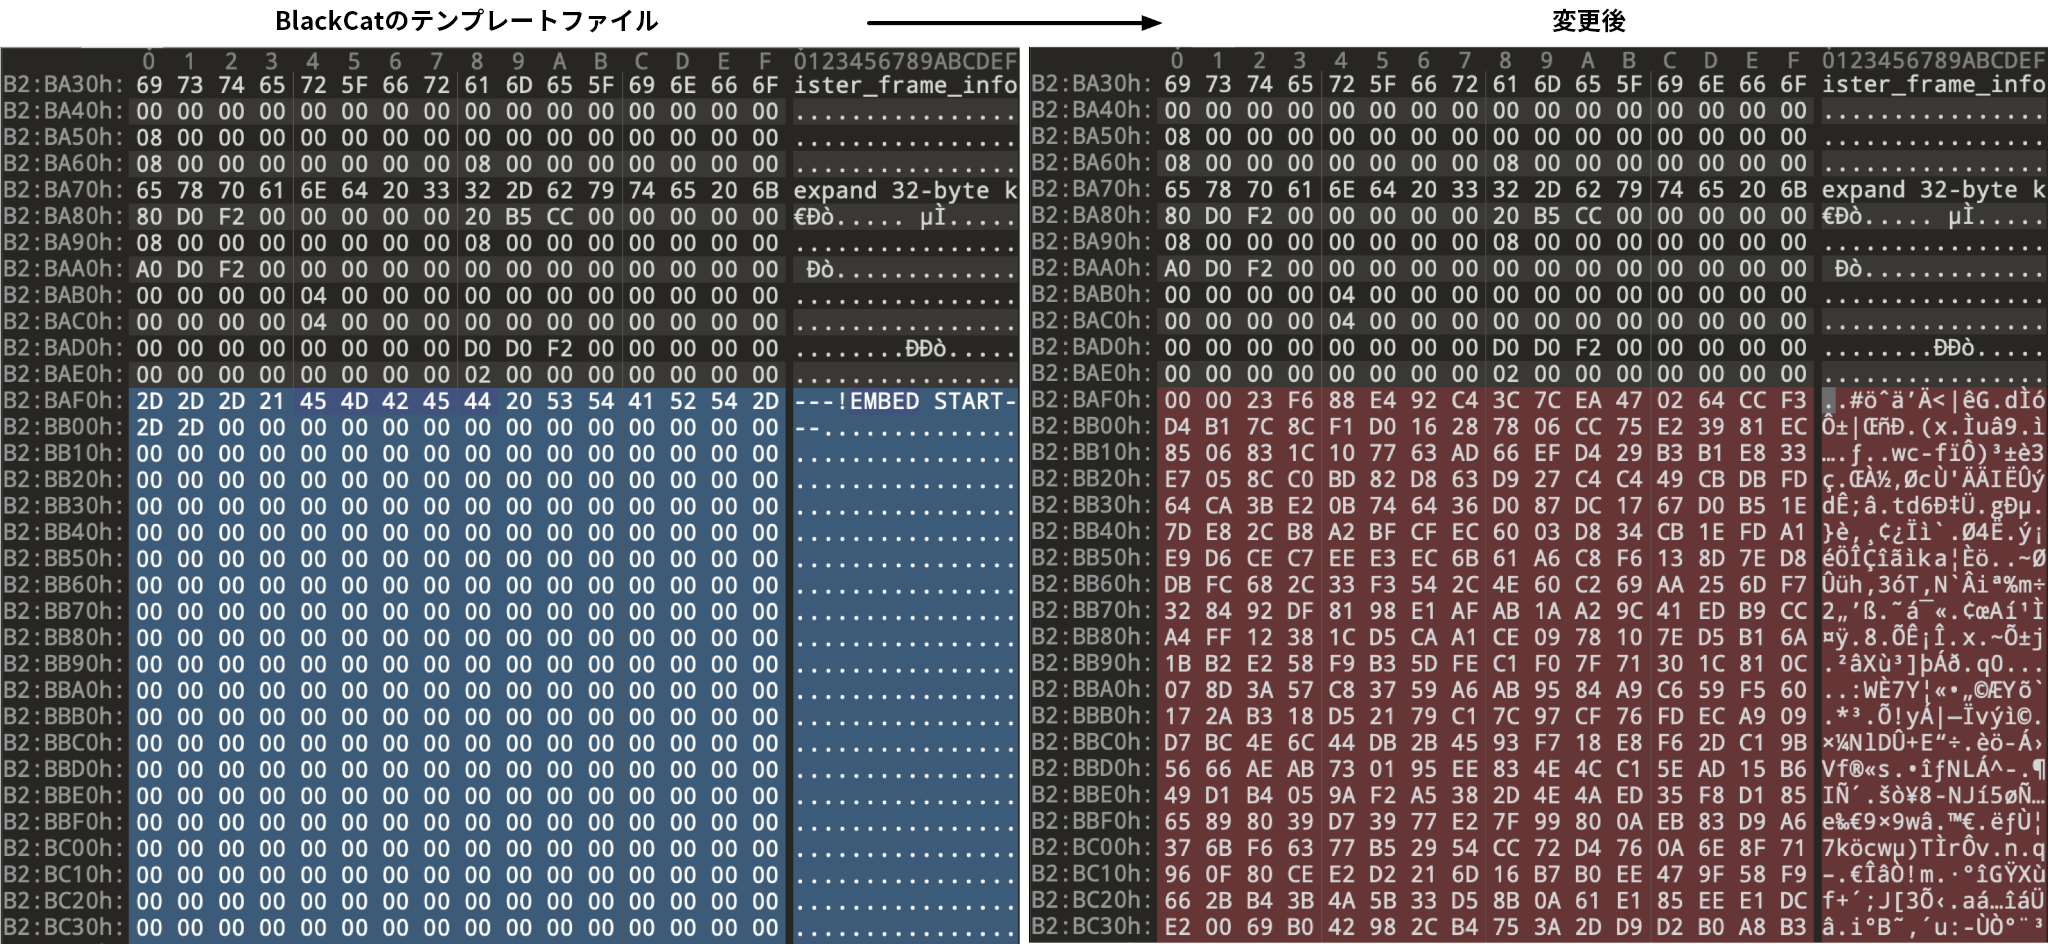 画像 3 は、2 つの BlackCat サンプルの比較です。左側は BlackCat のテンプレート ファイルです。その行の多くは青で強調表示されています。右は修正後のサンプルです。その行の多くは赤で強調表示されています。 